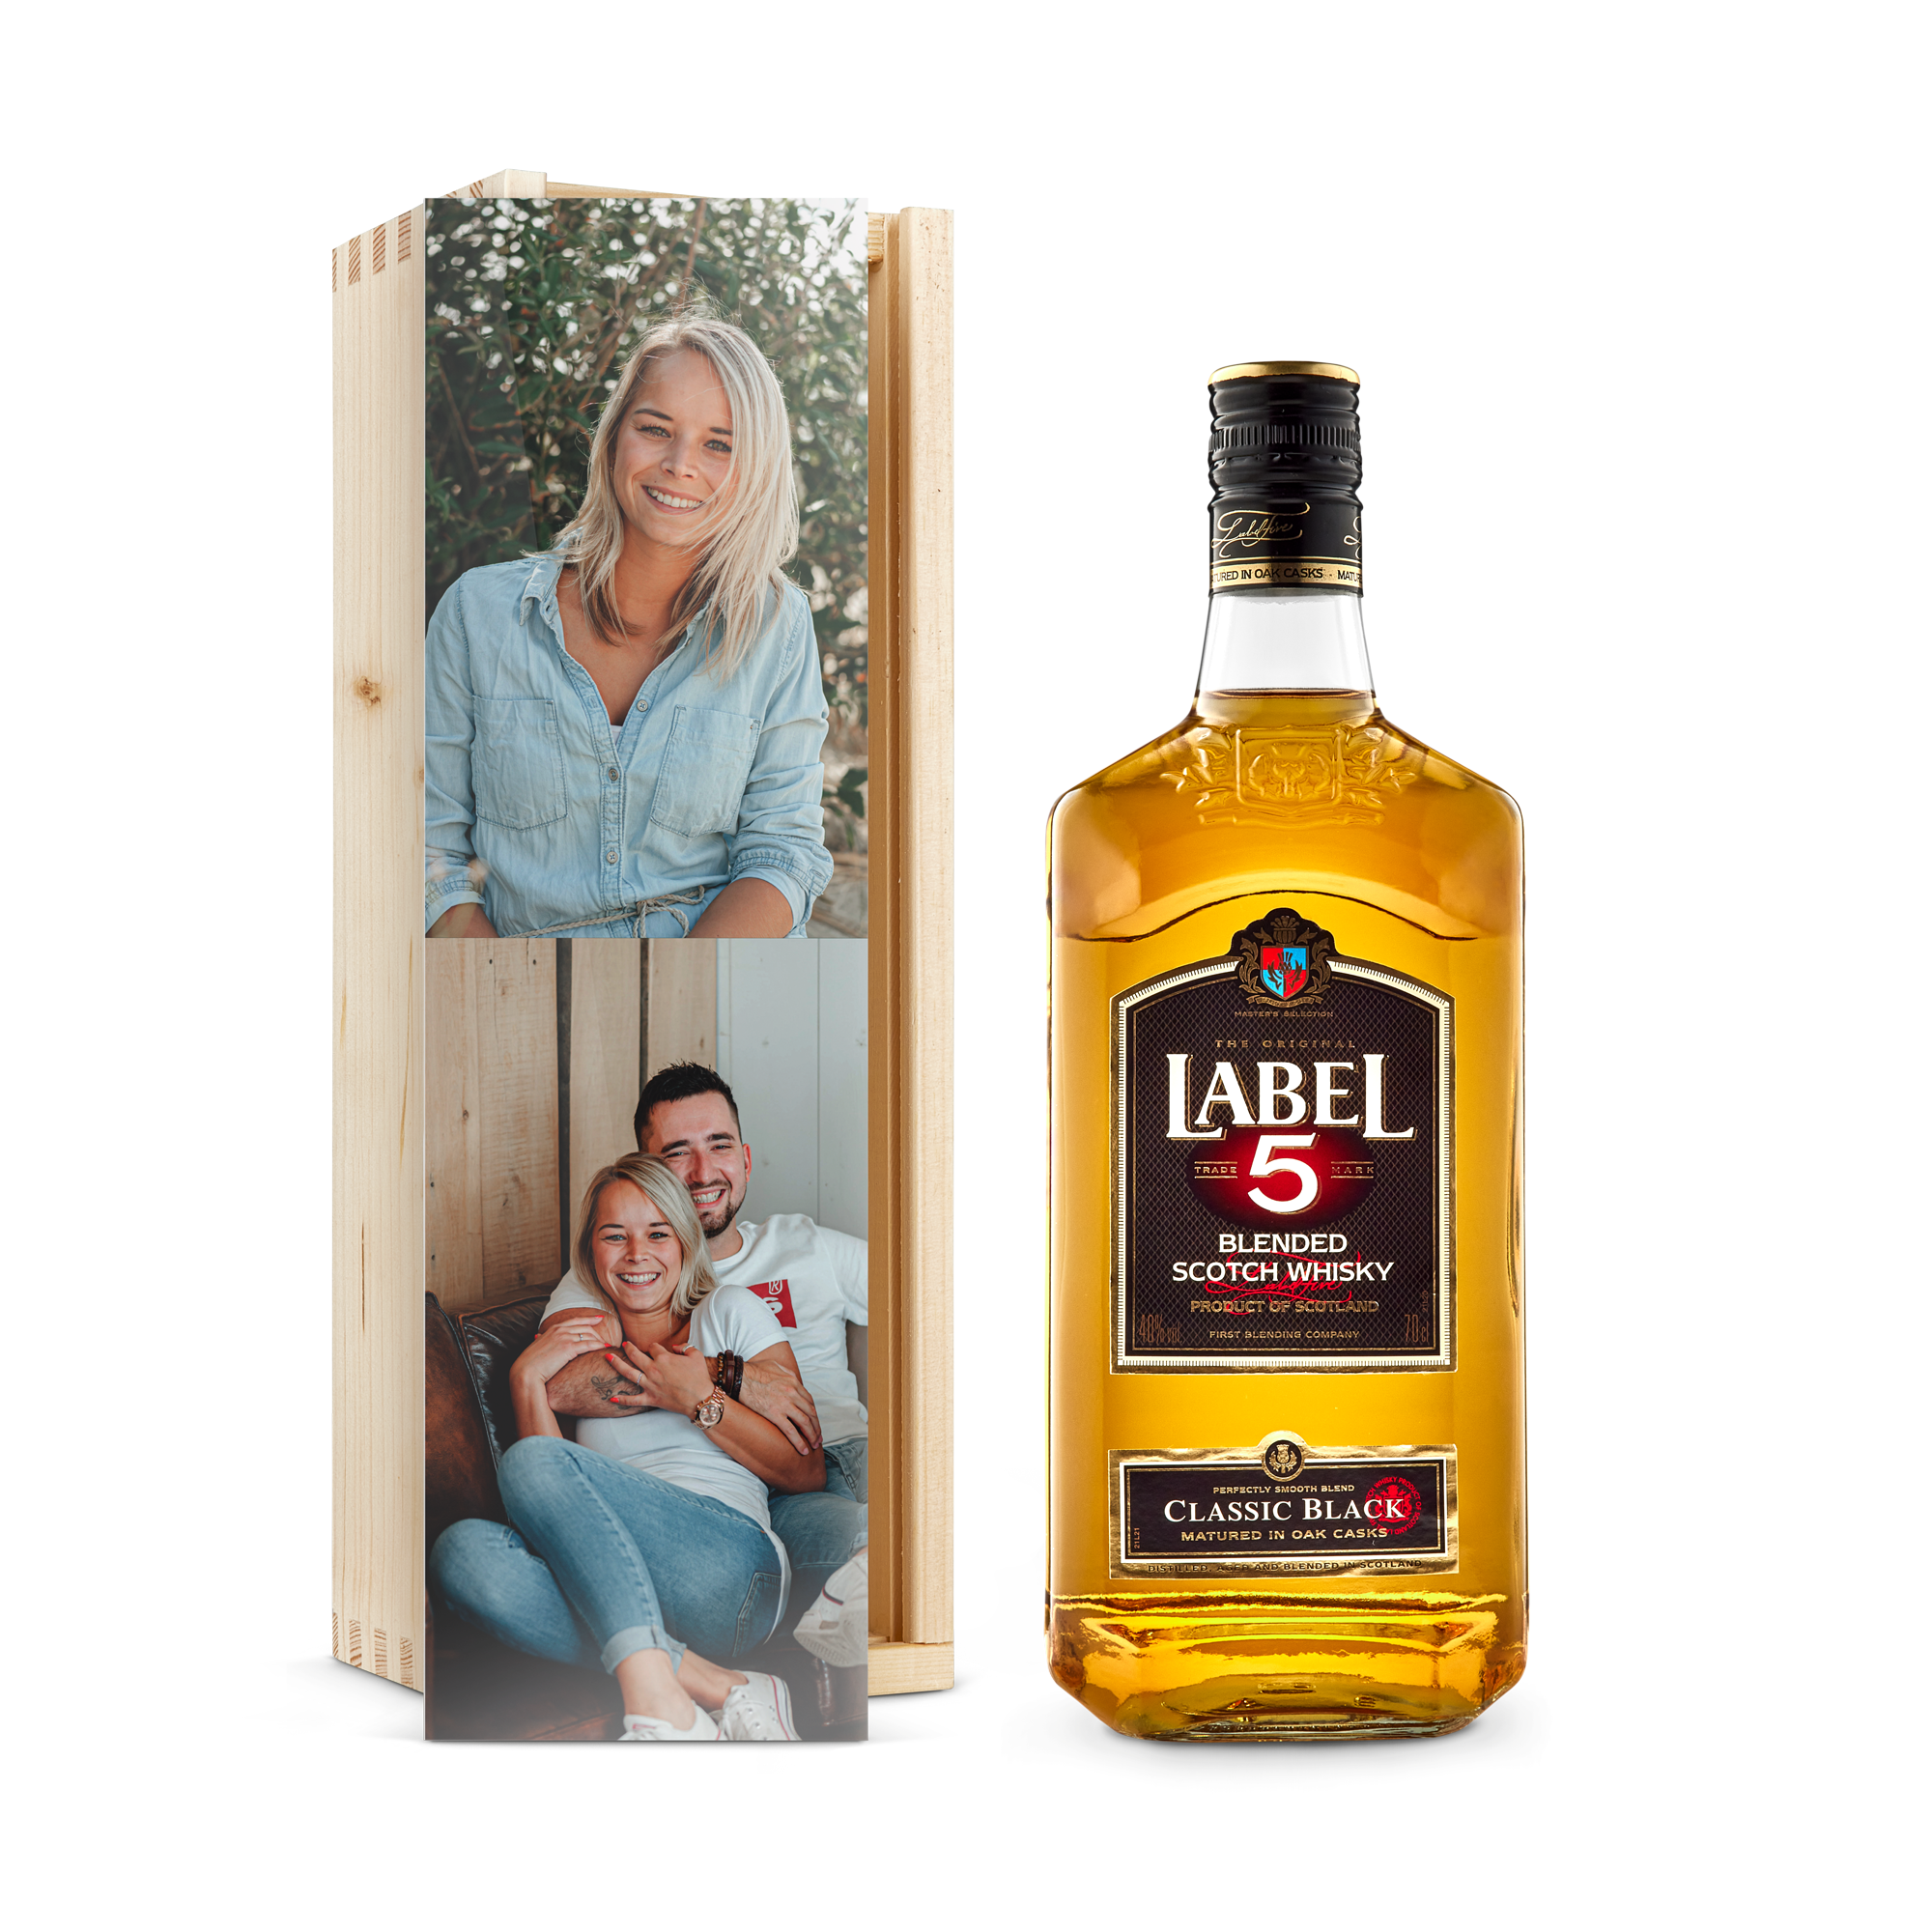 Label 5 whisky în cutie personalizată